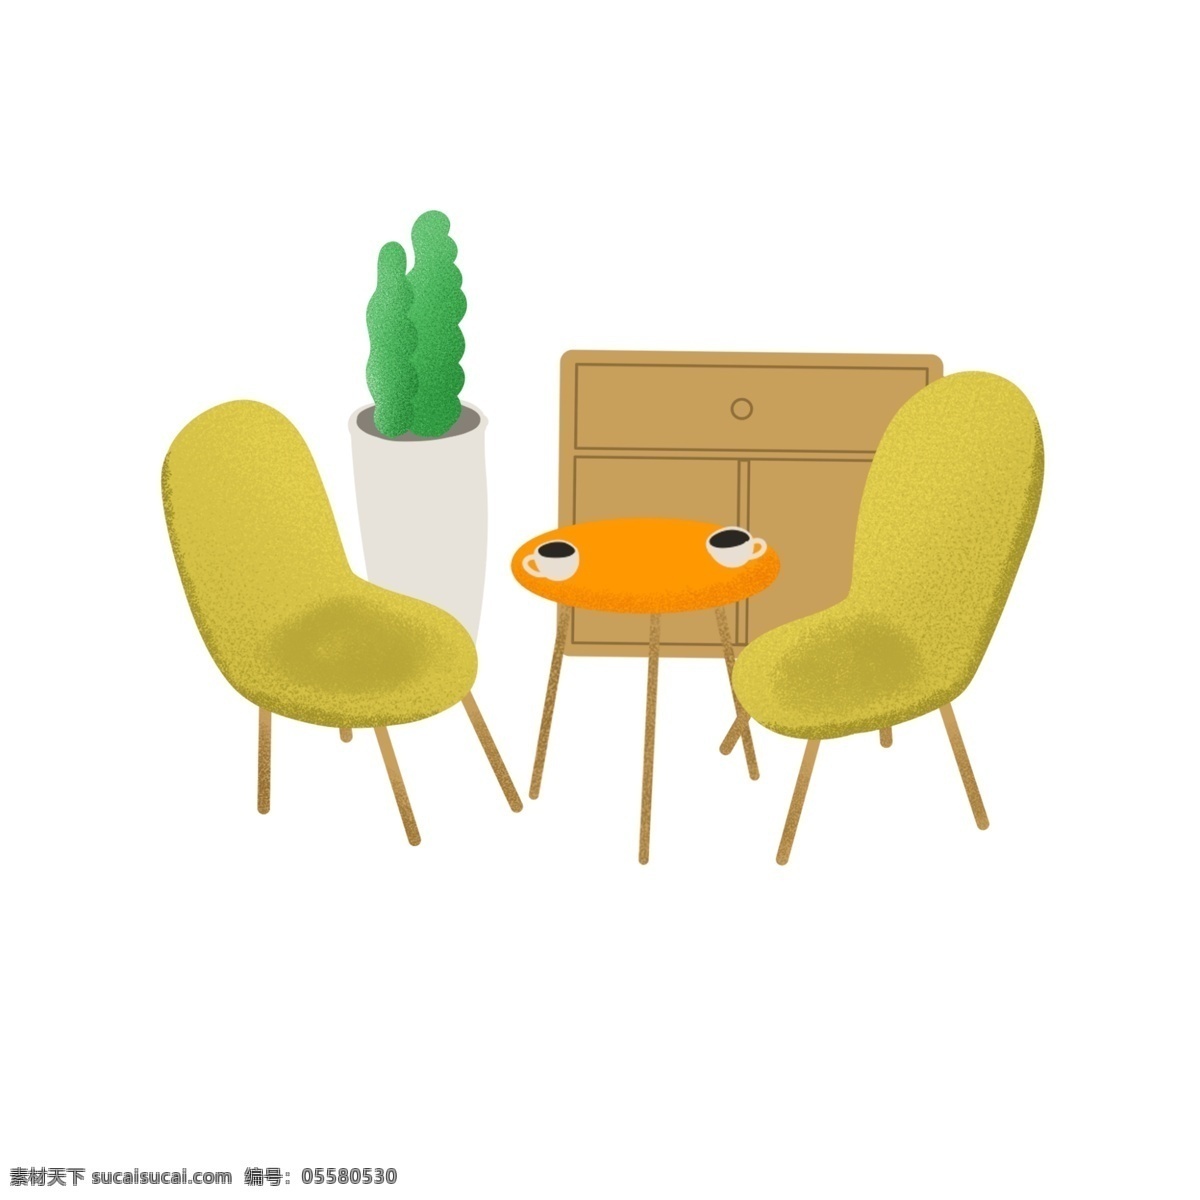 清新 风 家具 插画 png图片 椅子 黄色黄色椅子 绿色植物 桌子 咖啡 茶 柜子 下午时光 下午茶 谈心 生活 家装